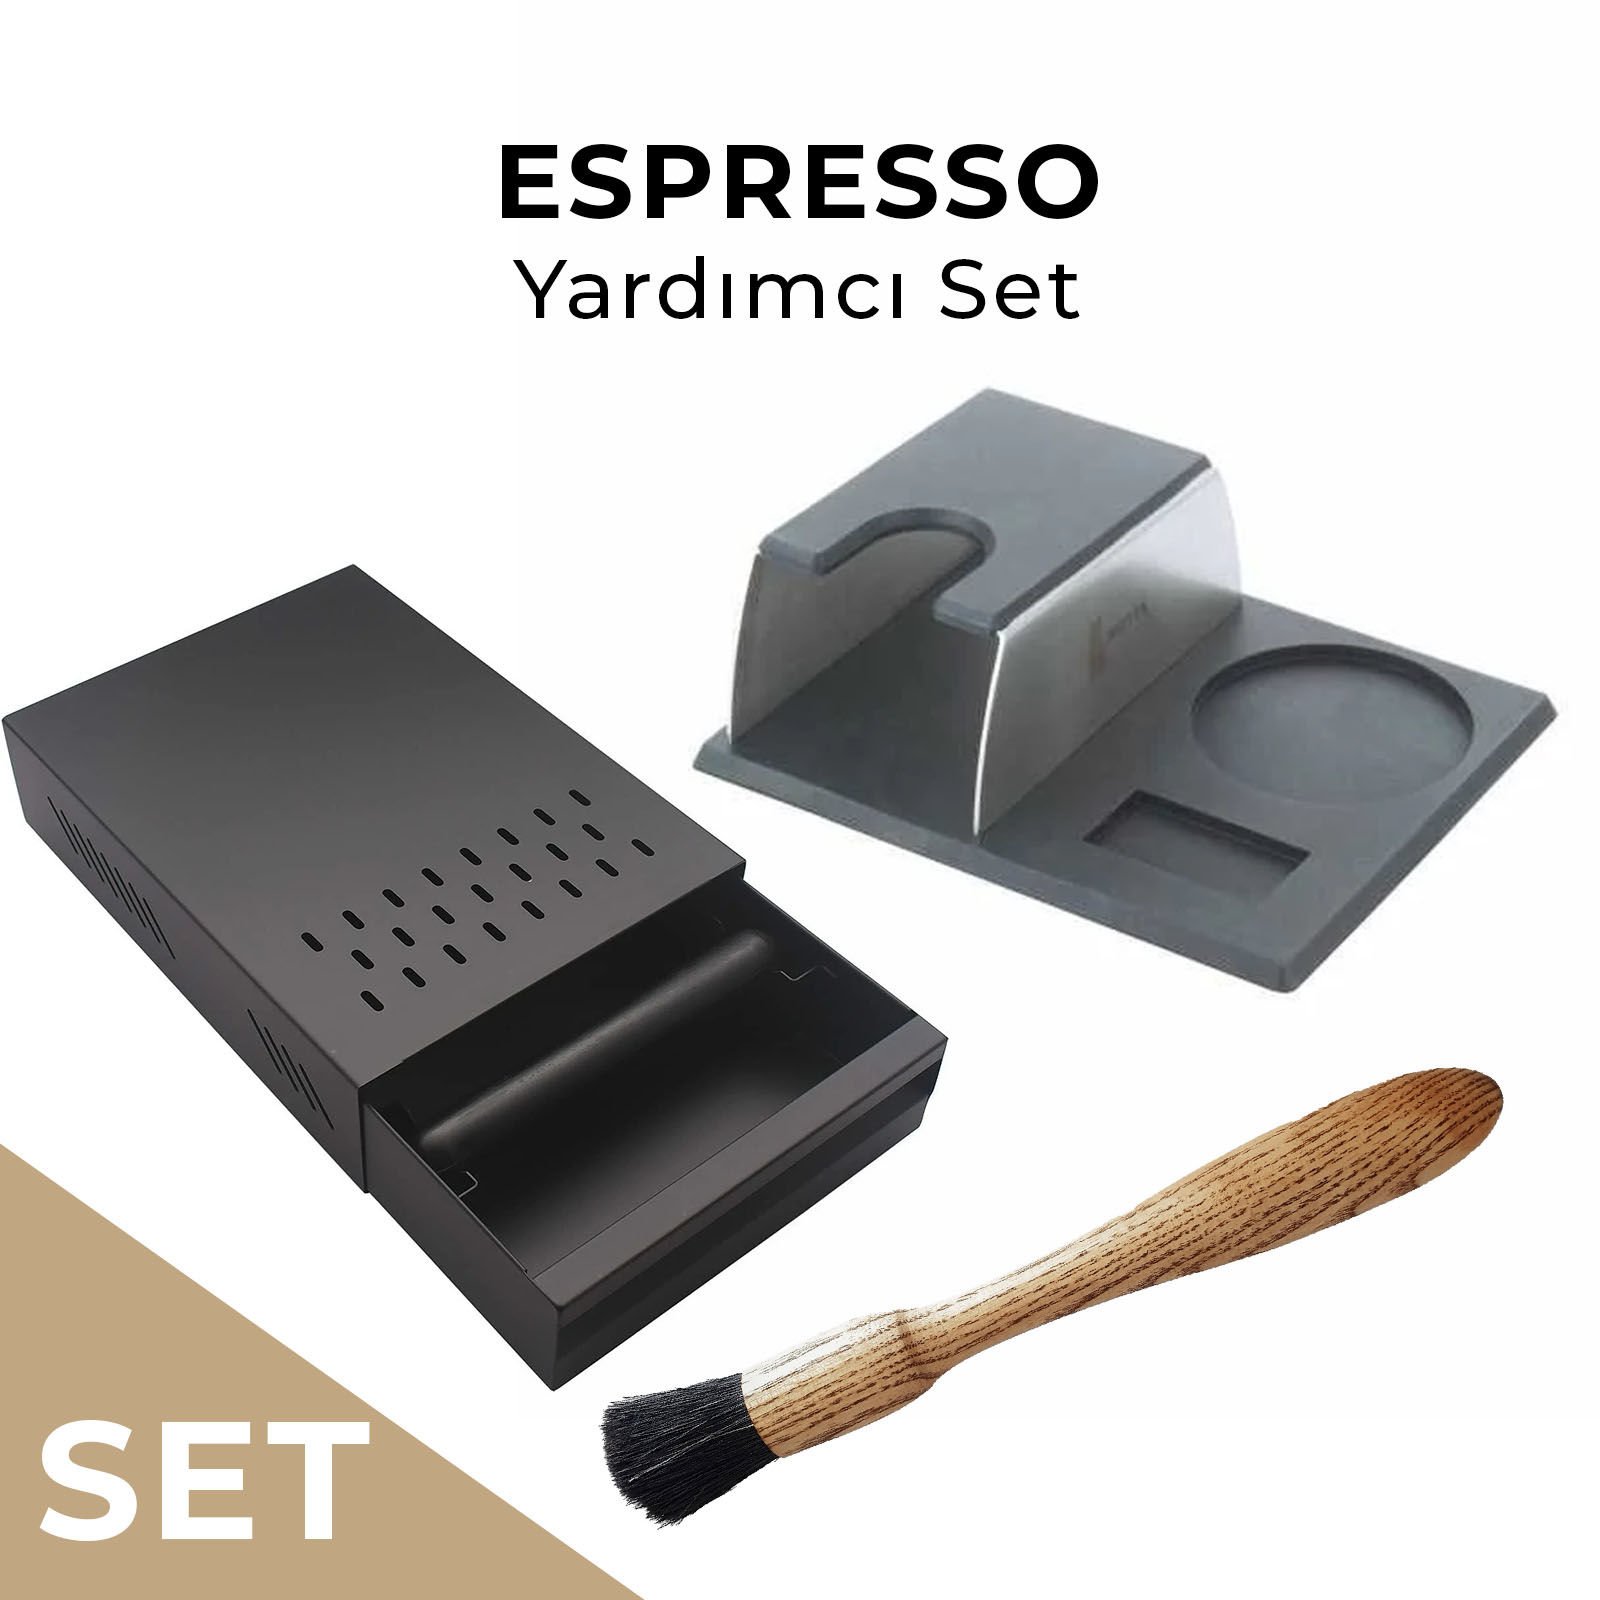 Espresso Yardımcı Ekipman Seti